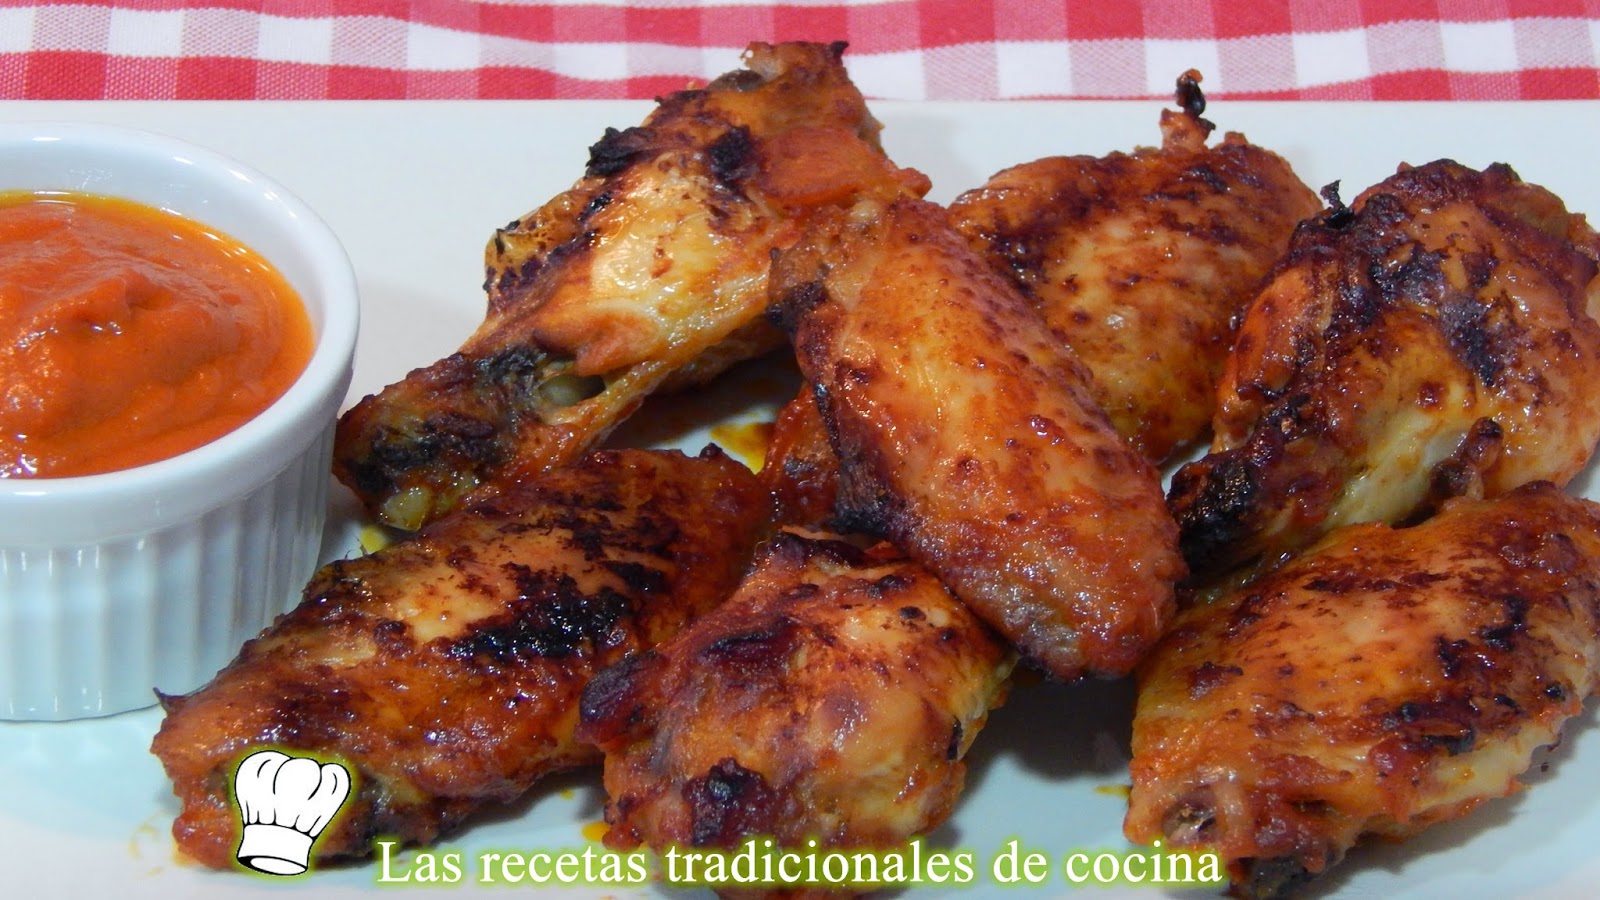 Receta de alitas de pollo con salsa barbacoa - Recetas de cocina con